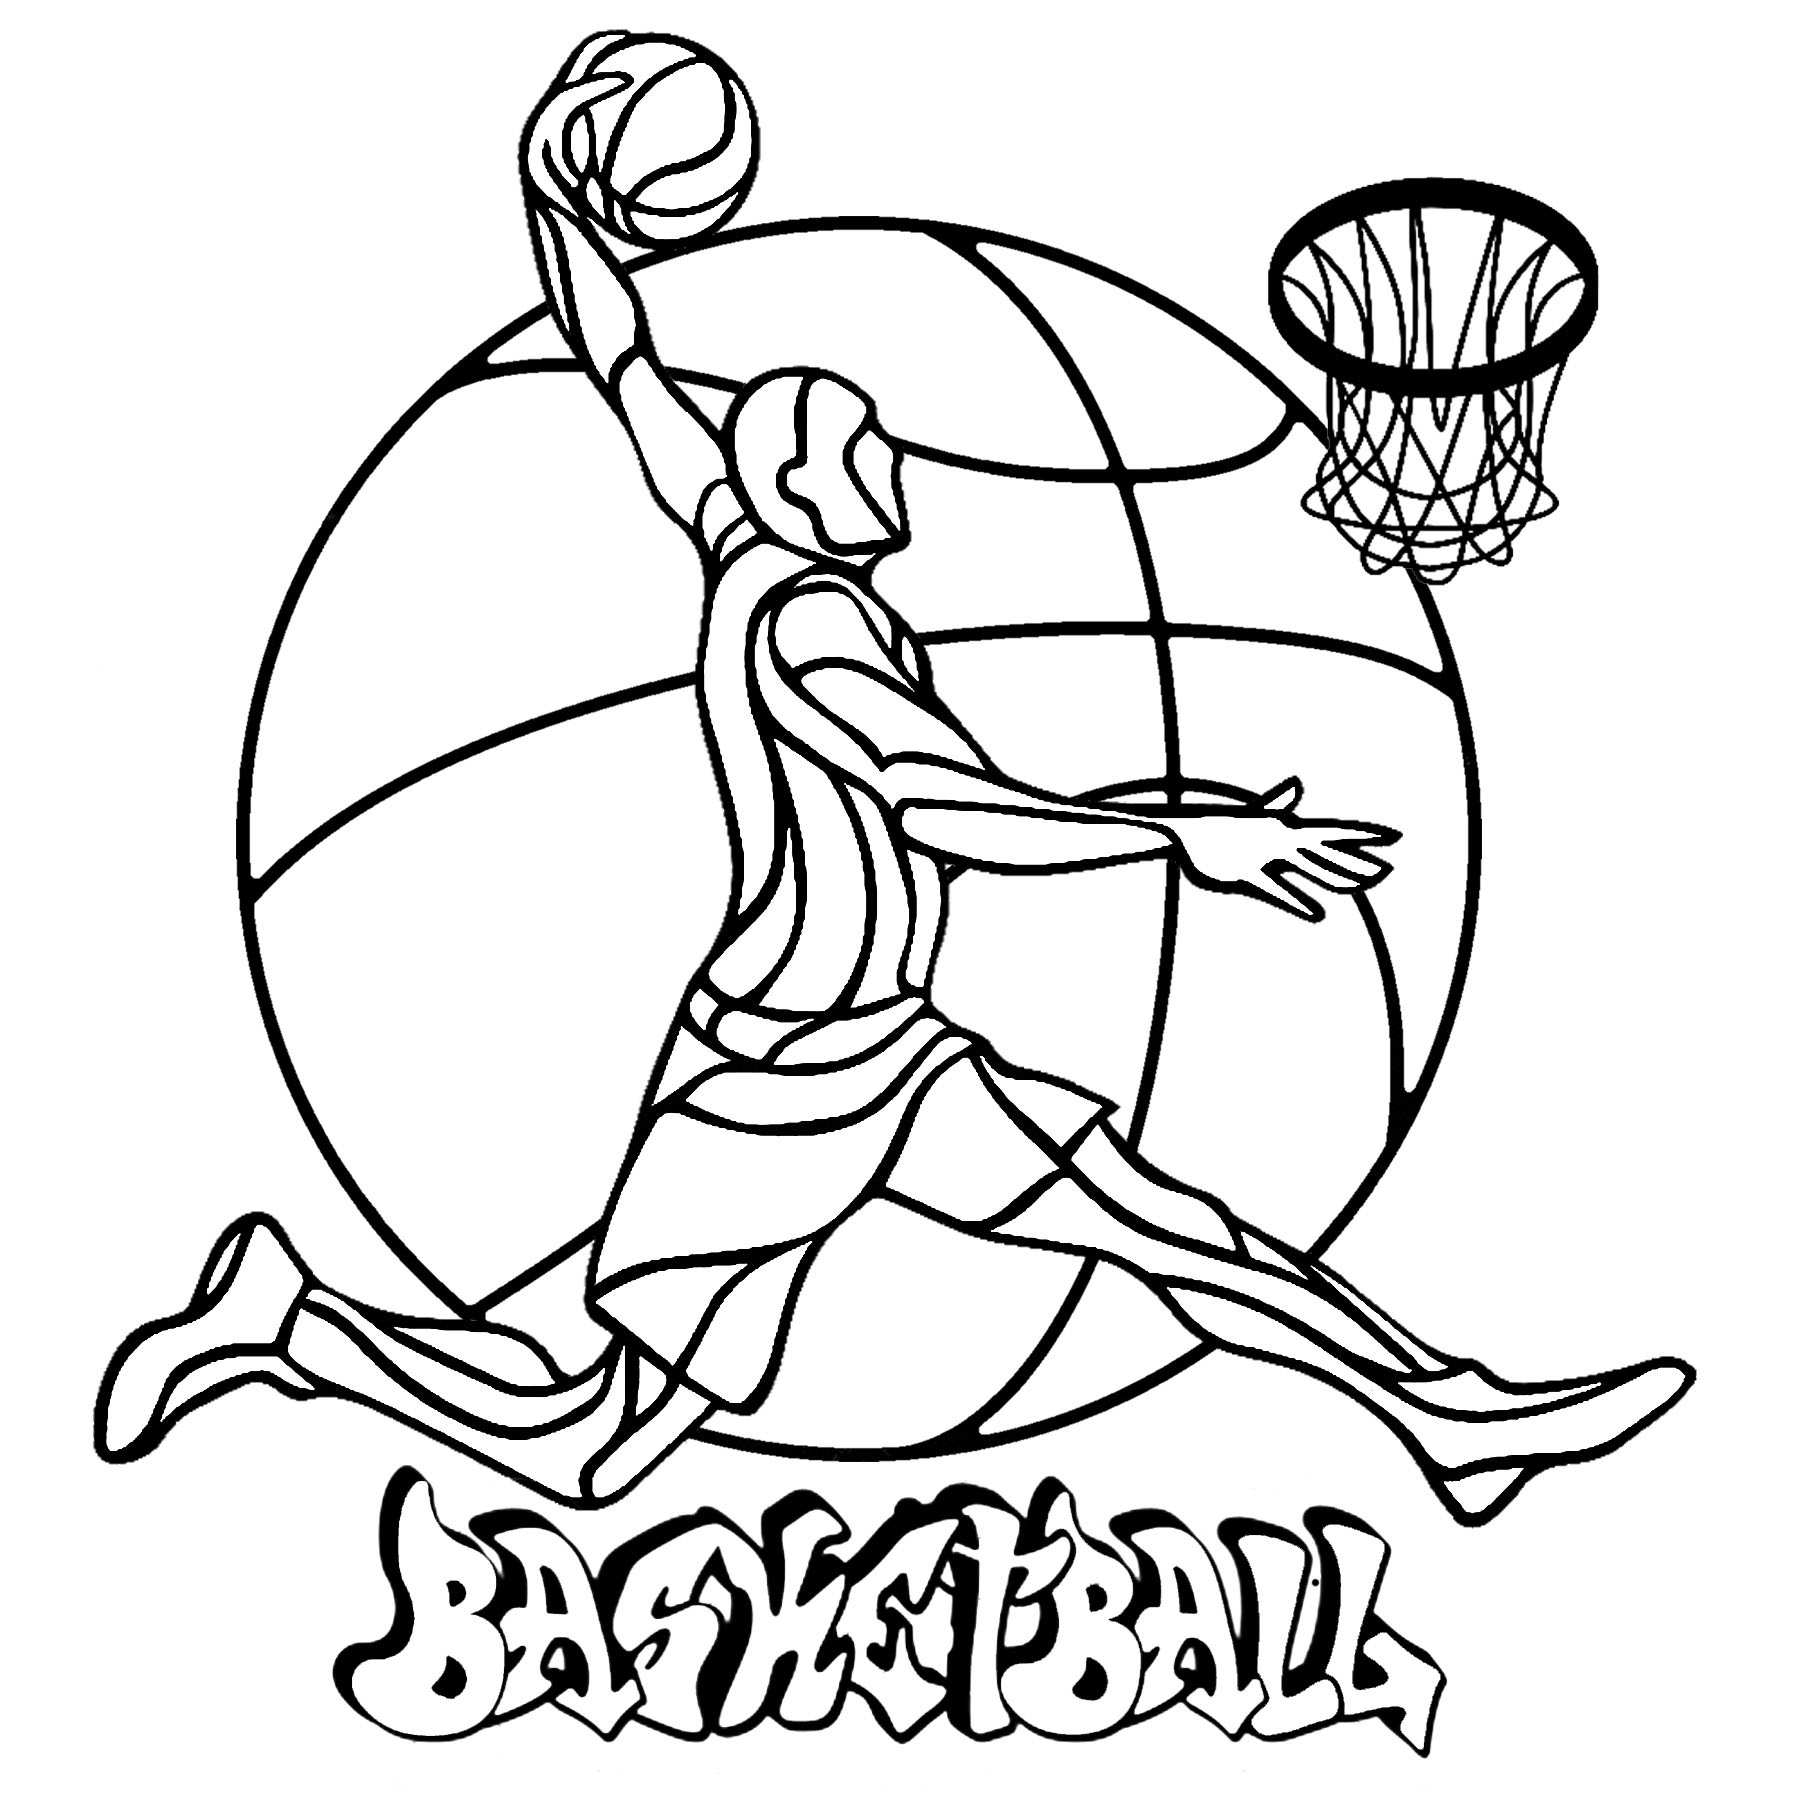 Página para colorear de baloncesto con un jugador, una canasta, un balón de fondo y 'Baloncesto' escrito en grafiti.